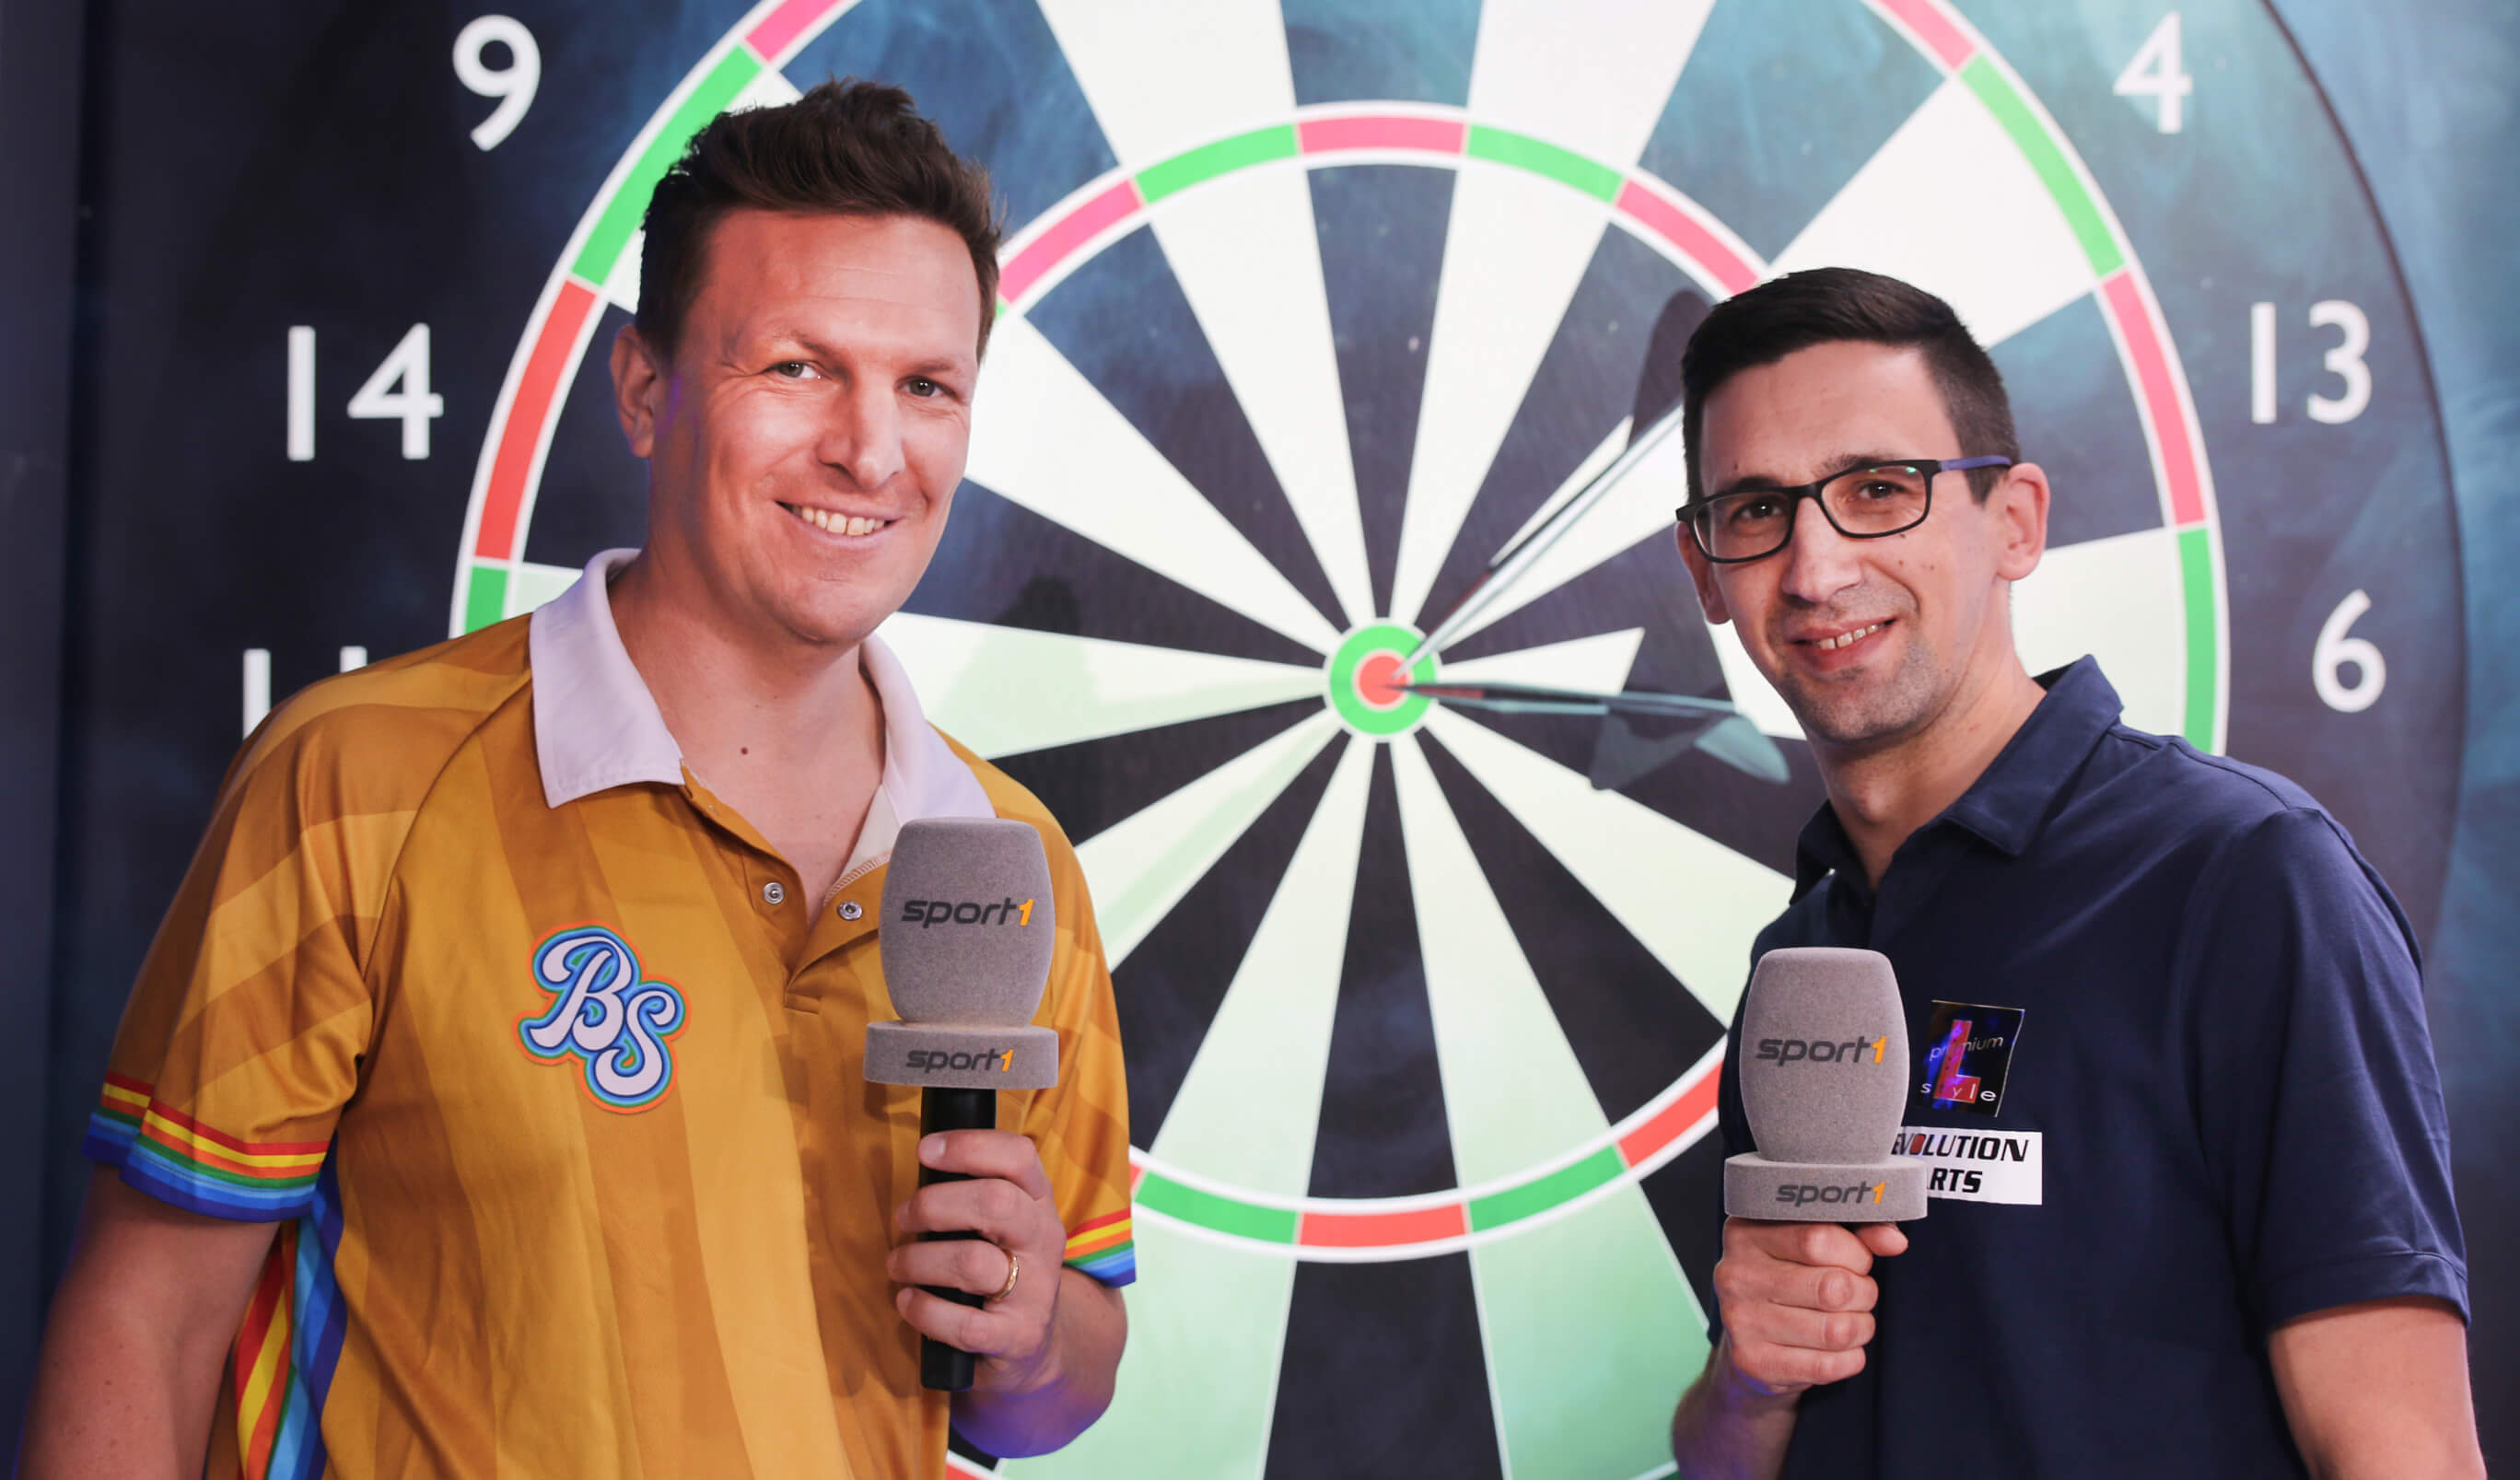 sport1 darts live tv